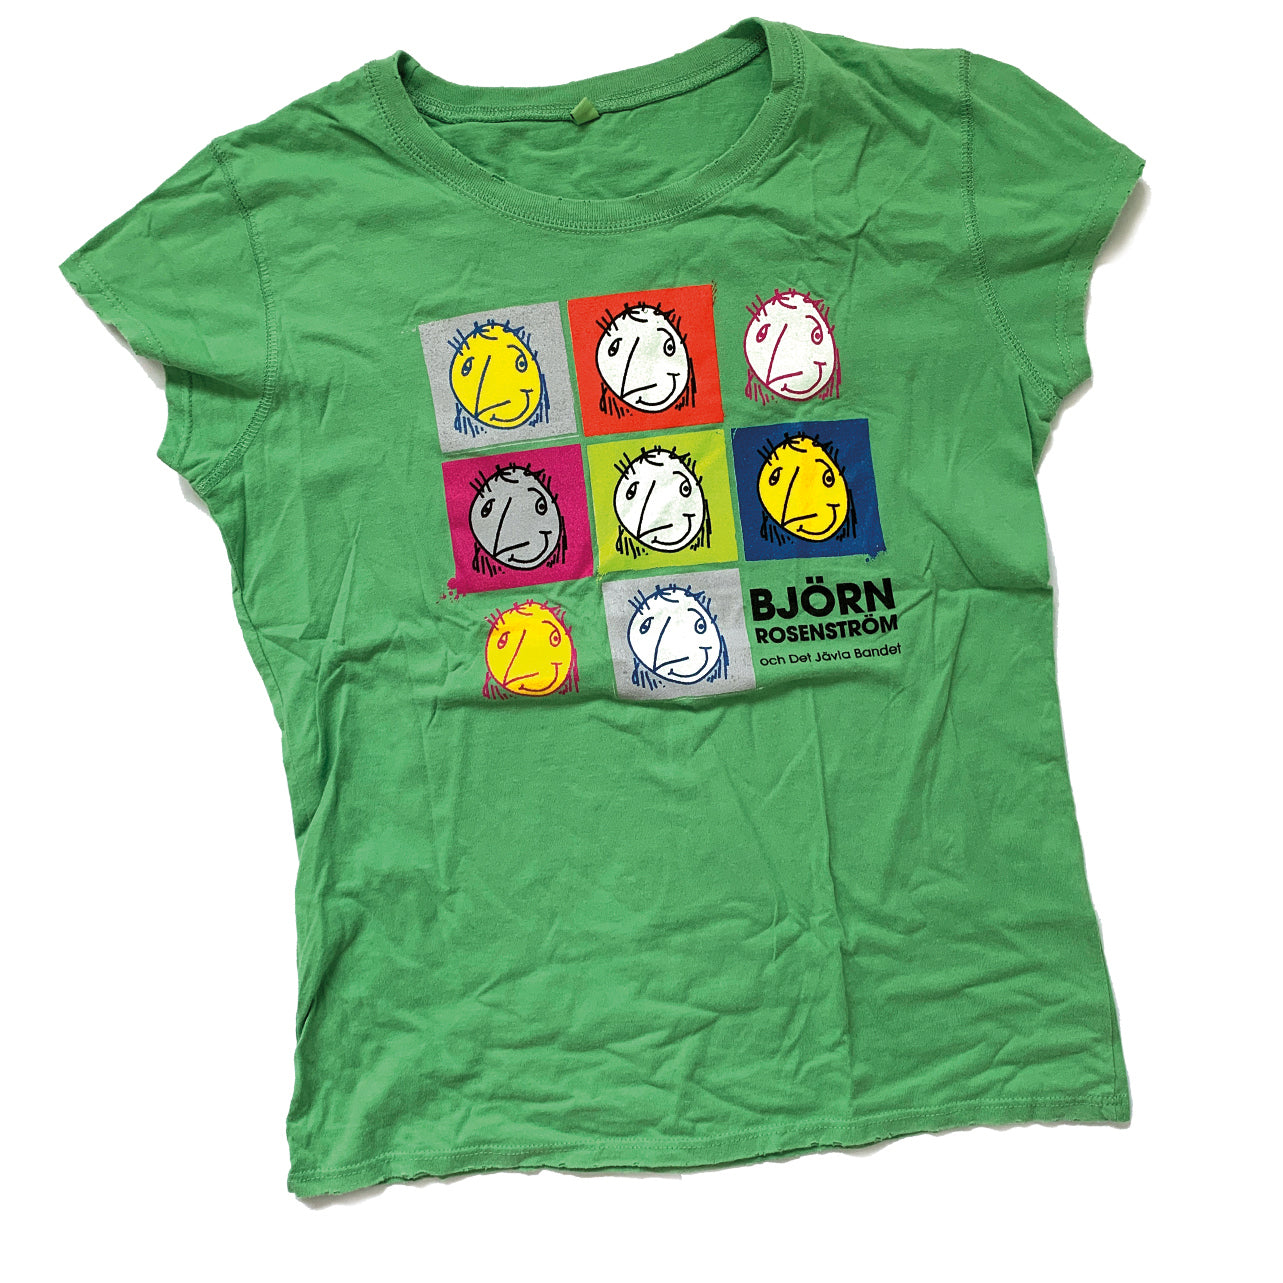 T-shirt små gubbar grön dam